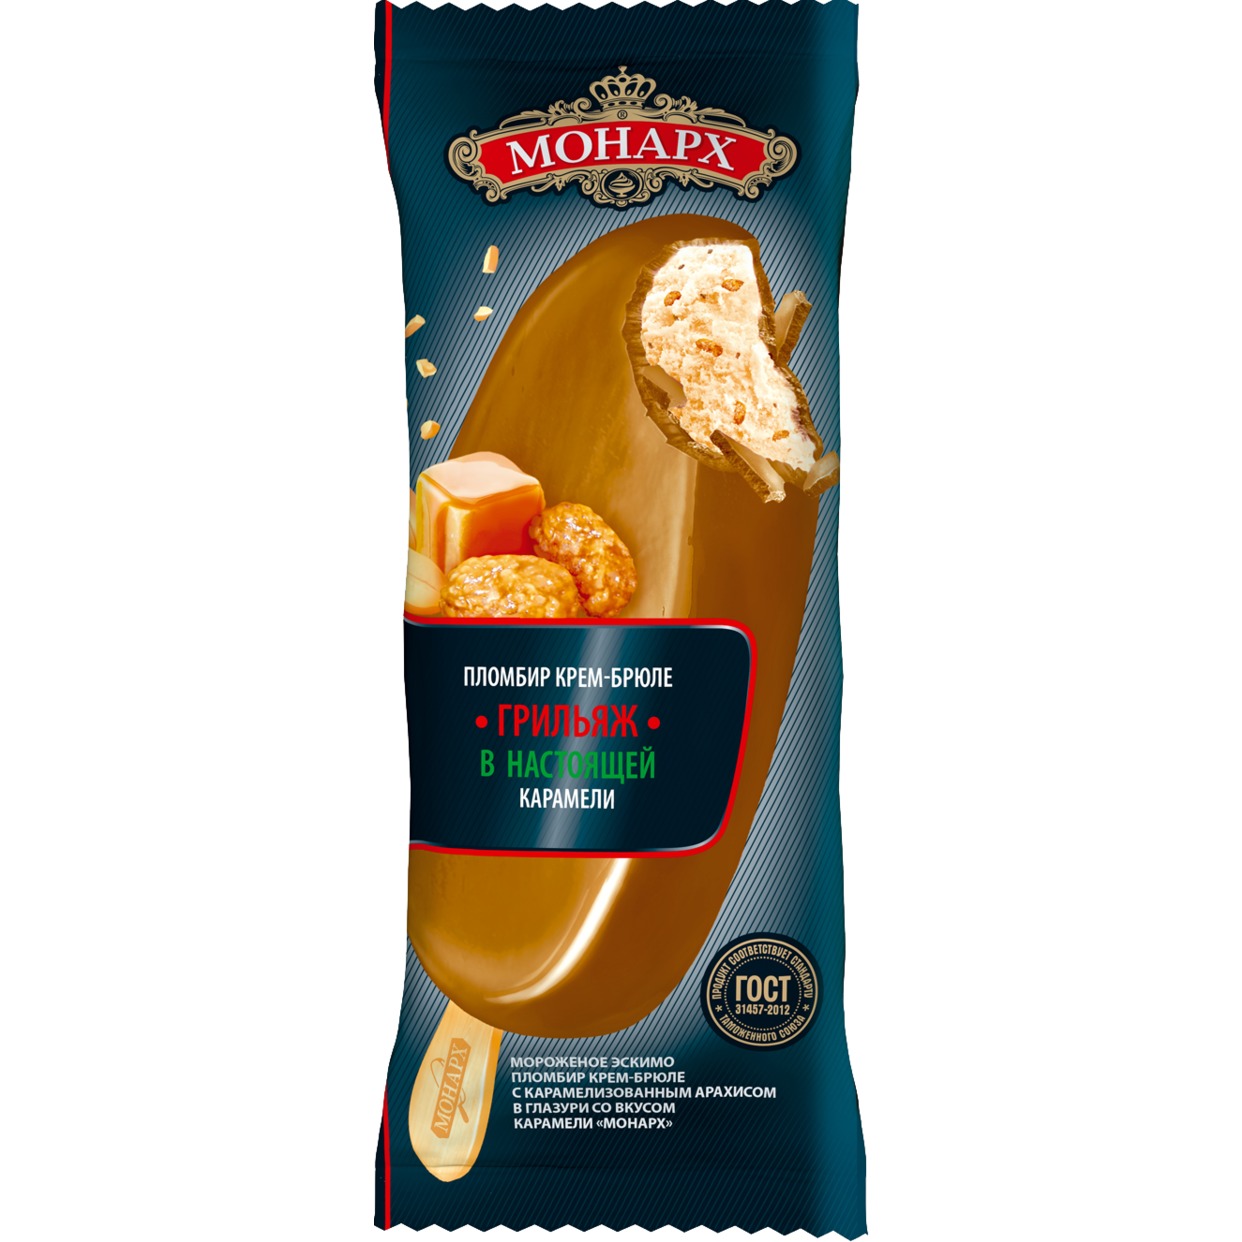 БЗМЖ МОНАРХ Мороженое эскимо пломбир крем-брюле с карамелизиров. арахисом в глазури со вкусом карамели "Монарх" 12% 90г